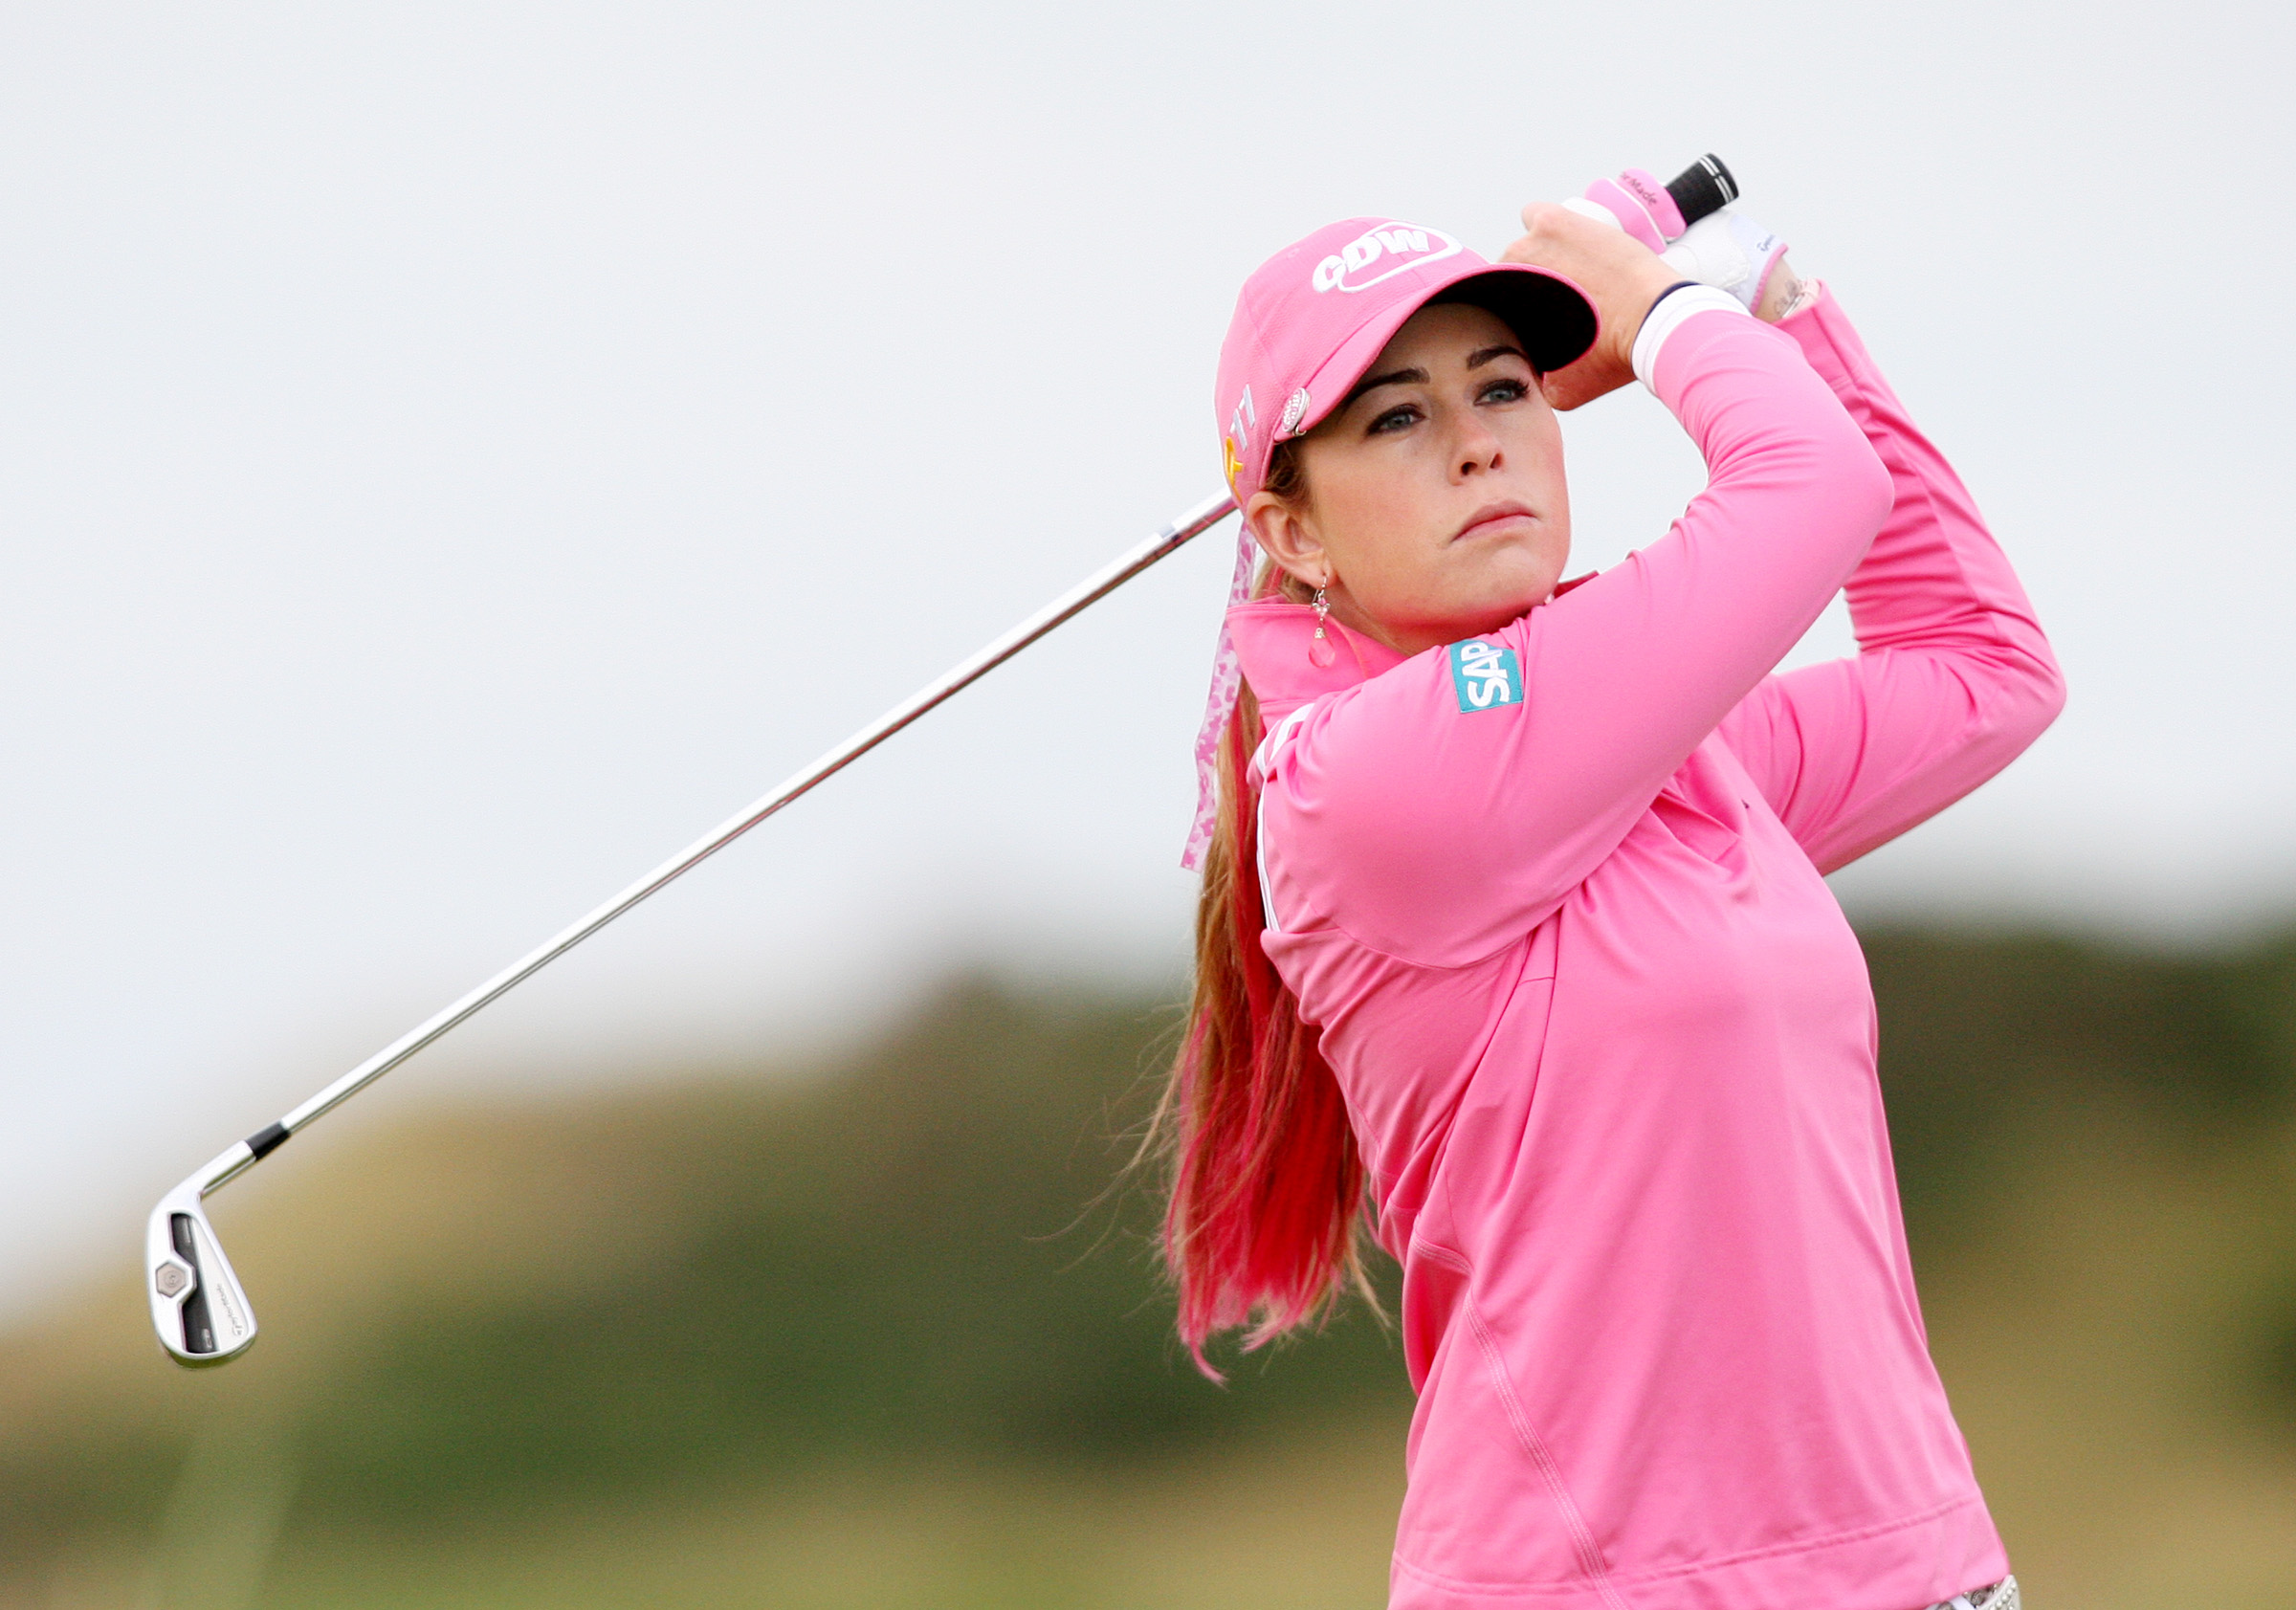 Paula Creamer, den rosa golfaren, spelade hem 34 miljoner svenska kronor under 2010.